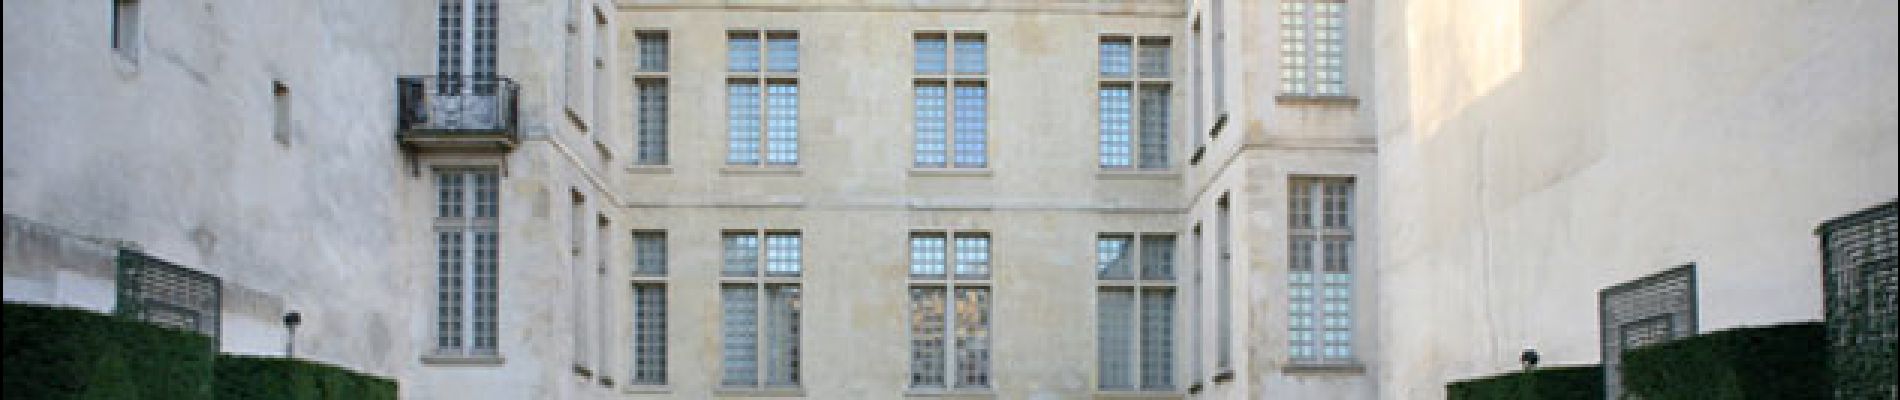 Punto de interés París - Musée Cognacq-Jay - Photo